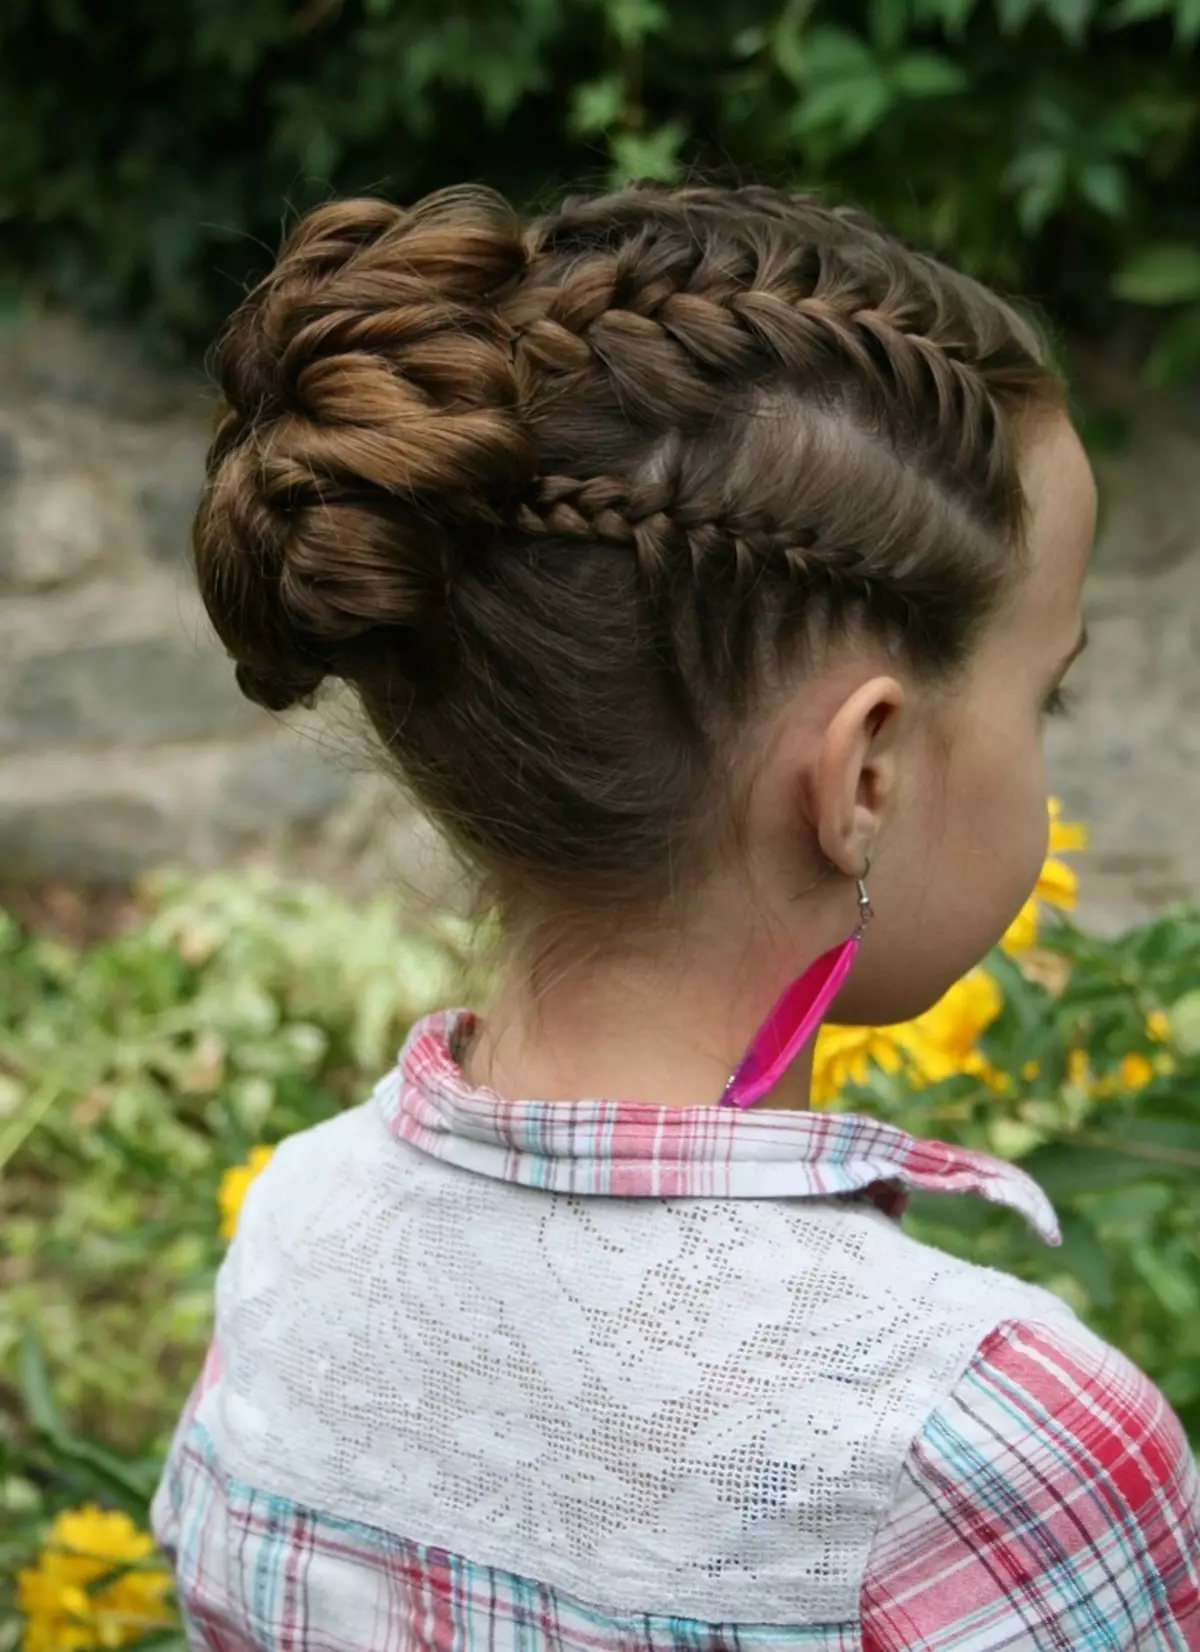 تسريحات الشعر الاحتفالية للفتيات مع شعر طويل (55 صورة): كيفية جعل تسريحات الشعر المسائية للأطفال للعطلة بأيديهم في المنزل؟ 16836_43